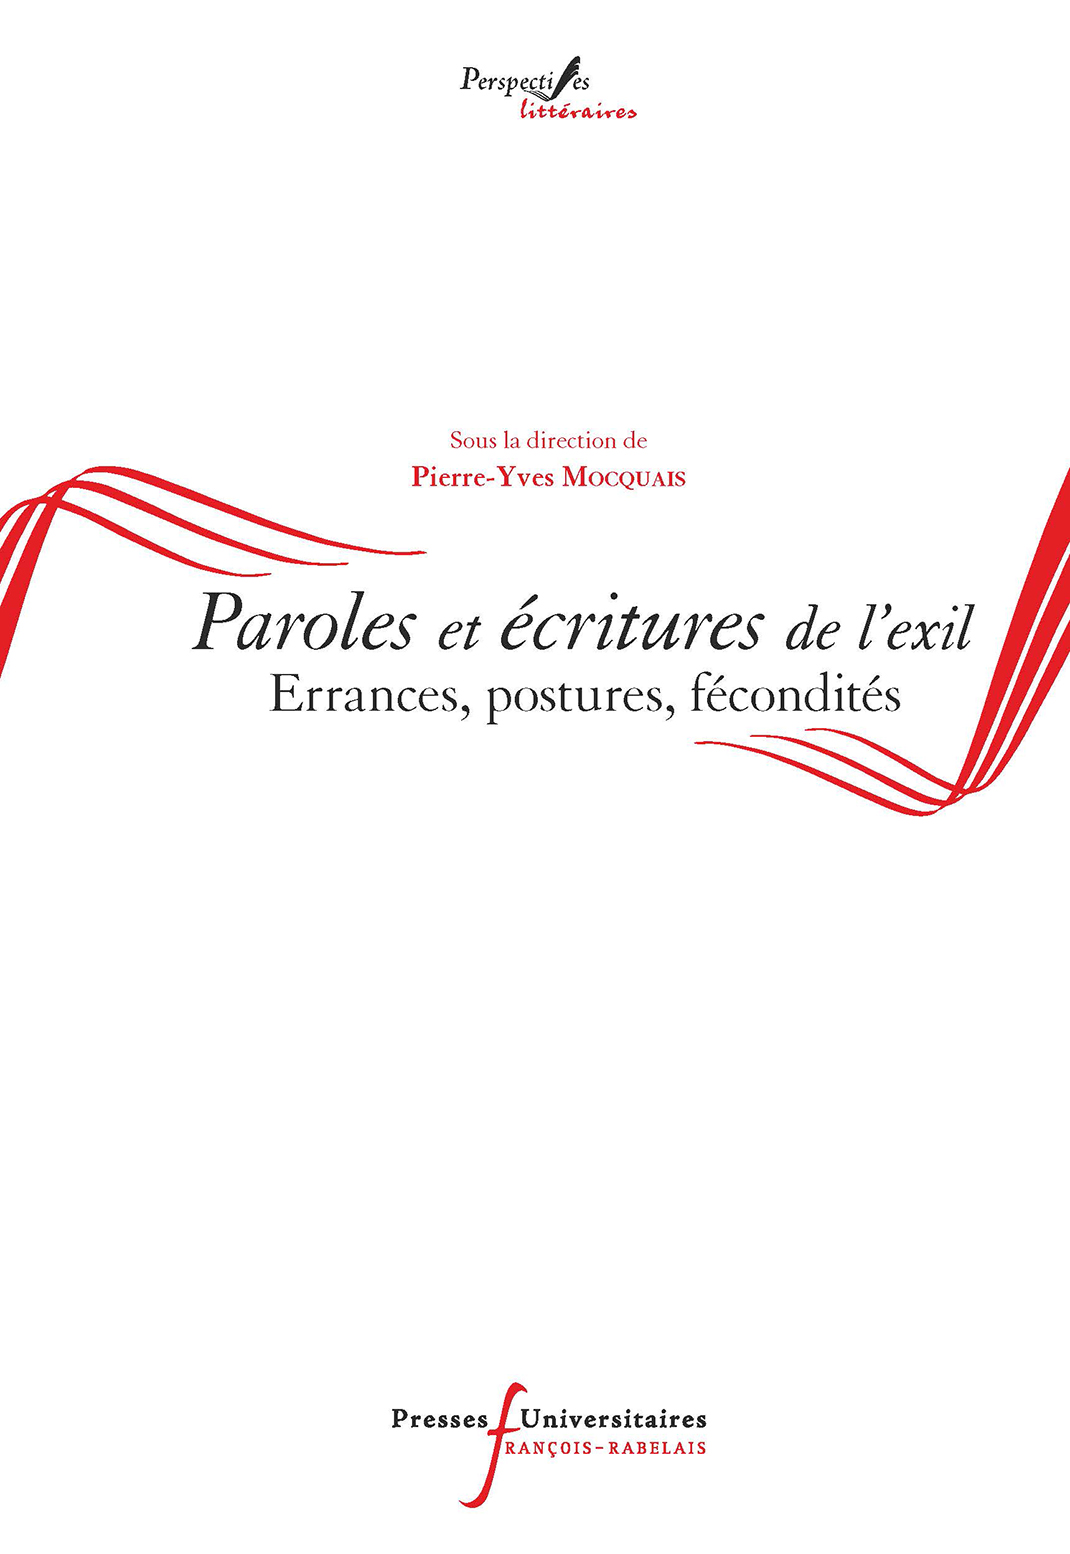 Paroles et écritures de l'exil - Pierre-Yves Moquais